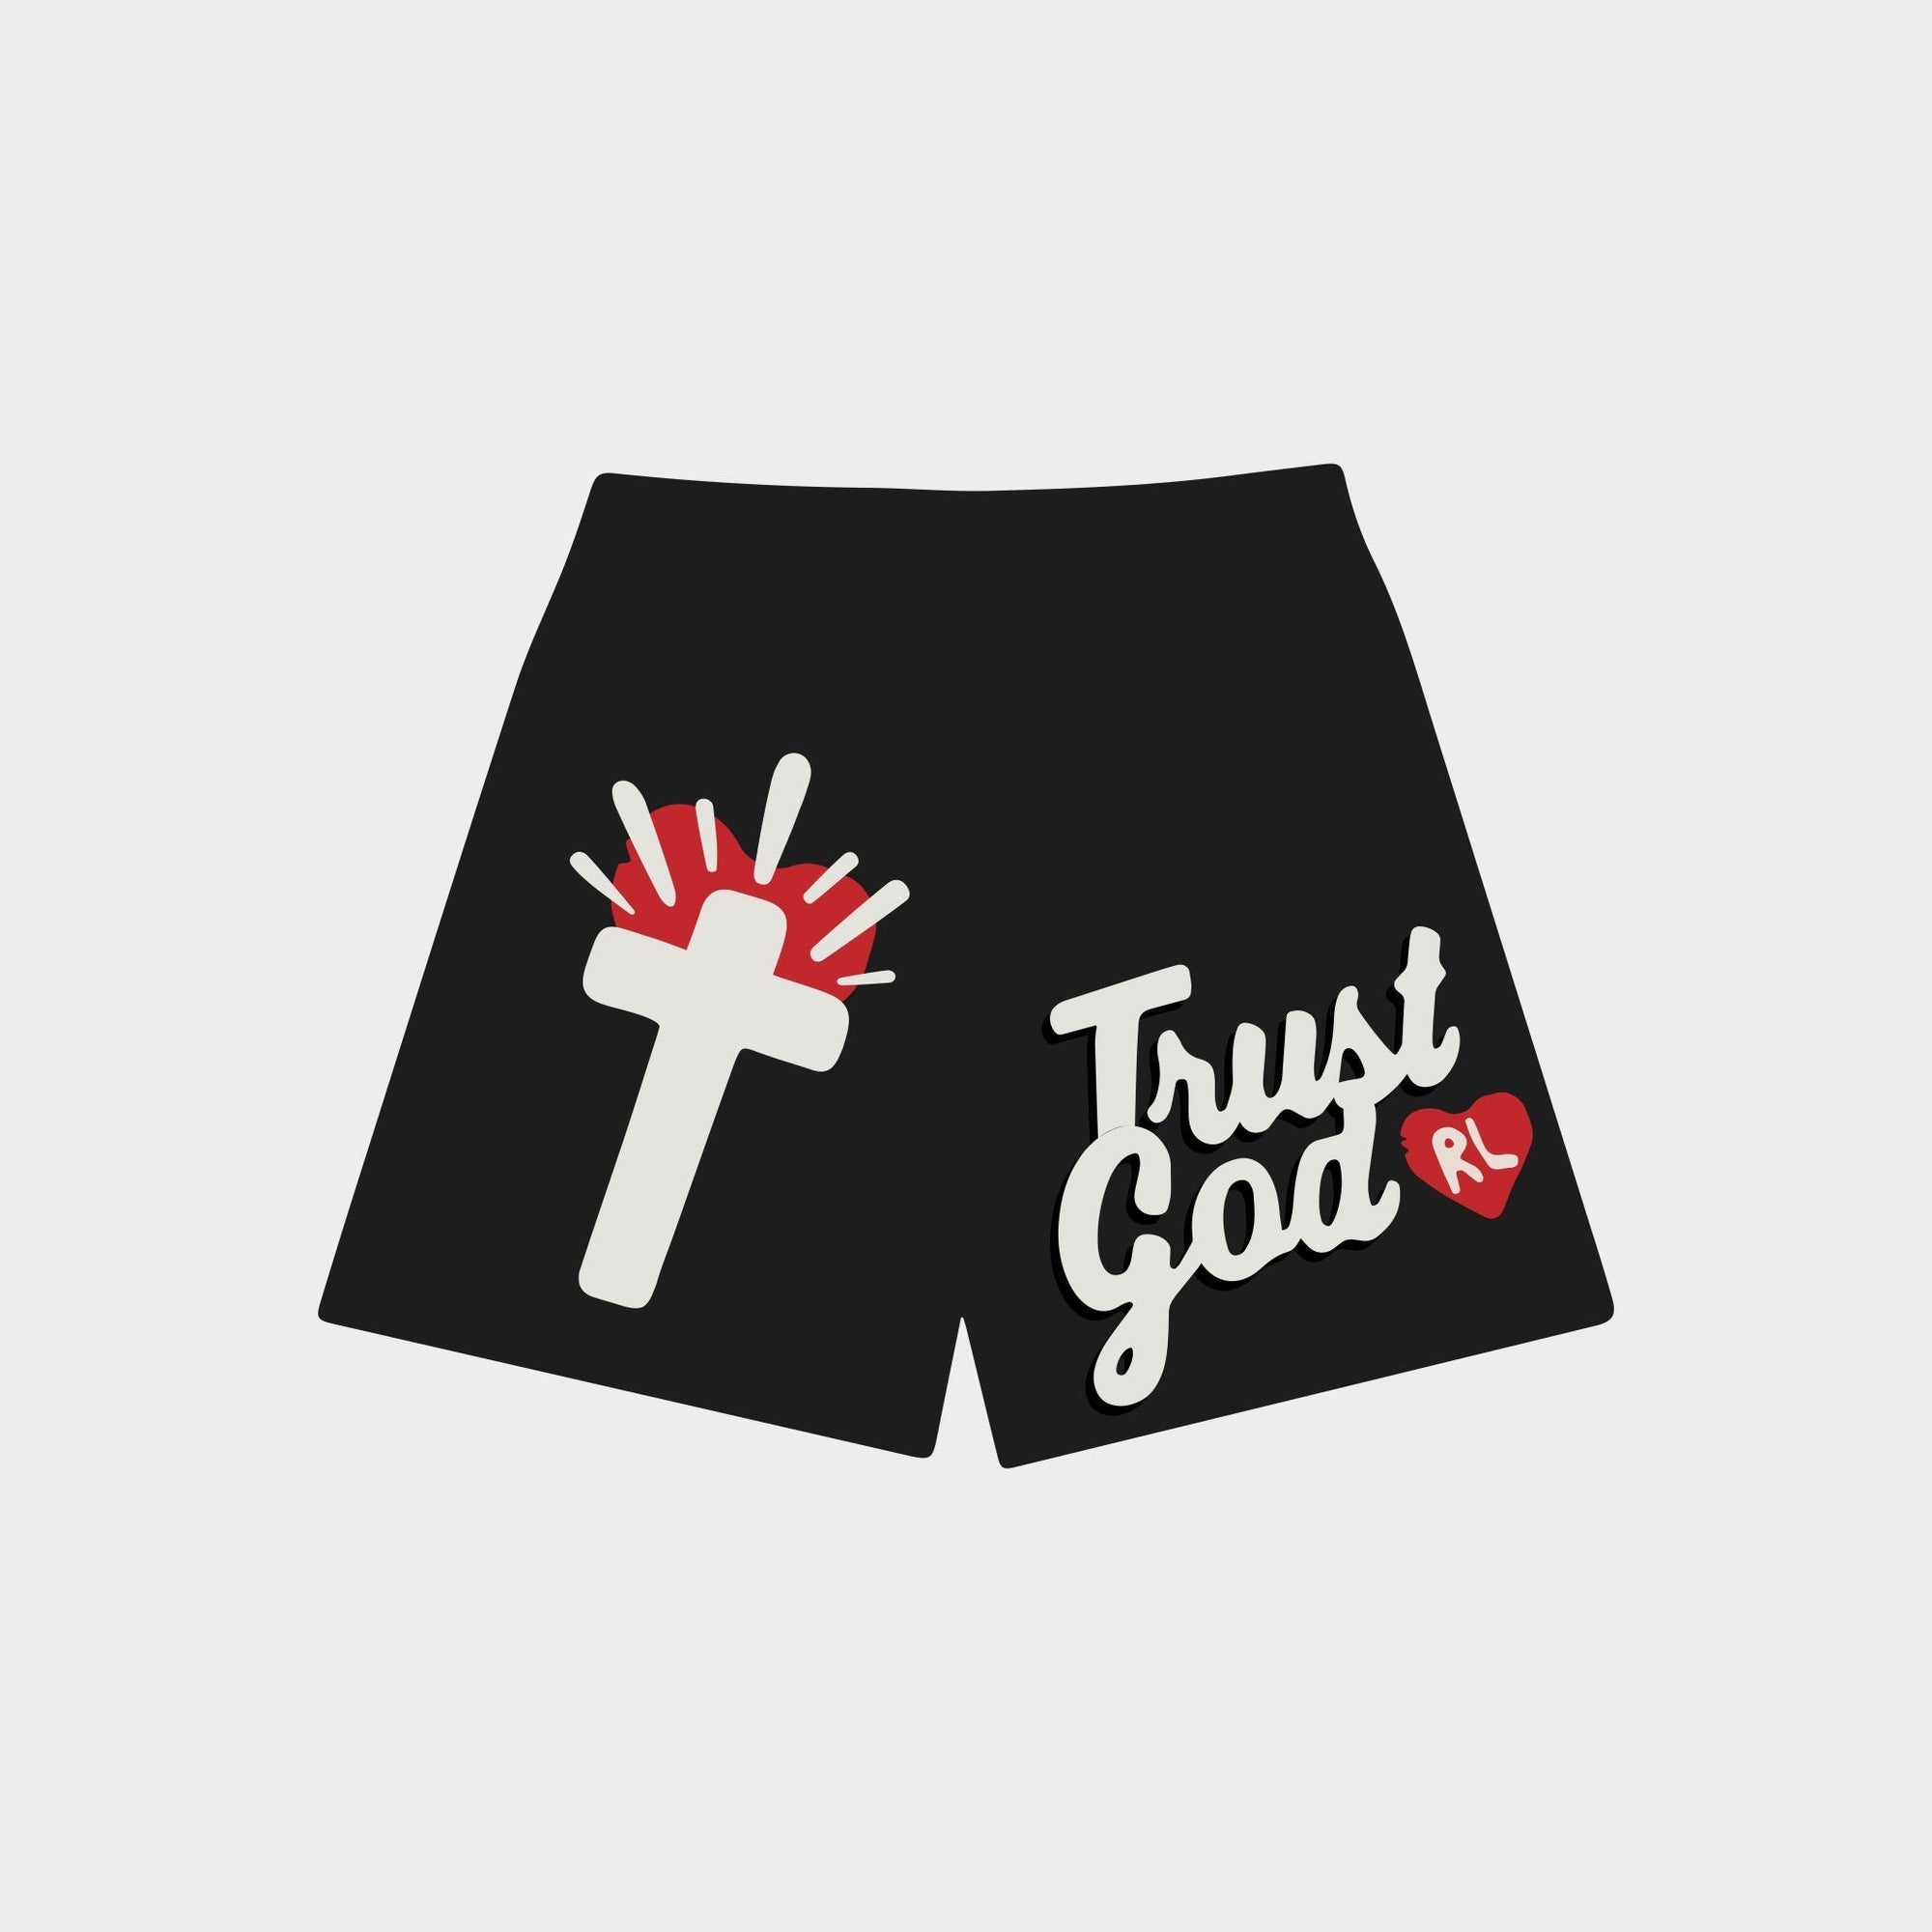 OG Trust God Mesh Shorts - RED LETTERS